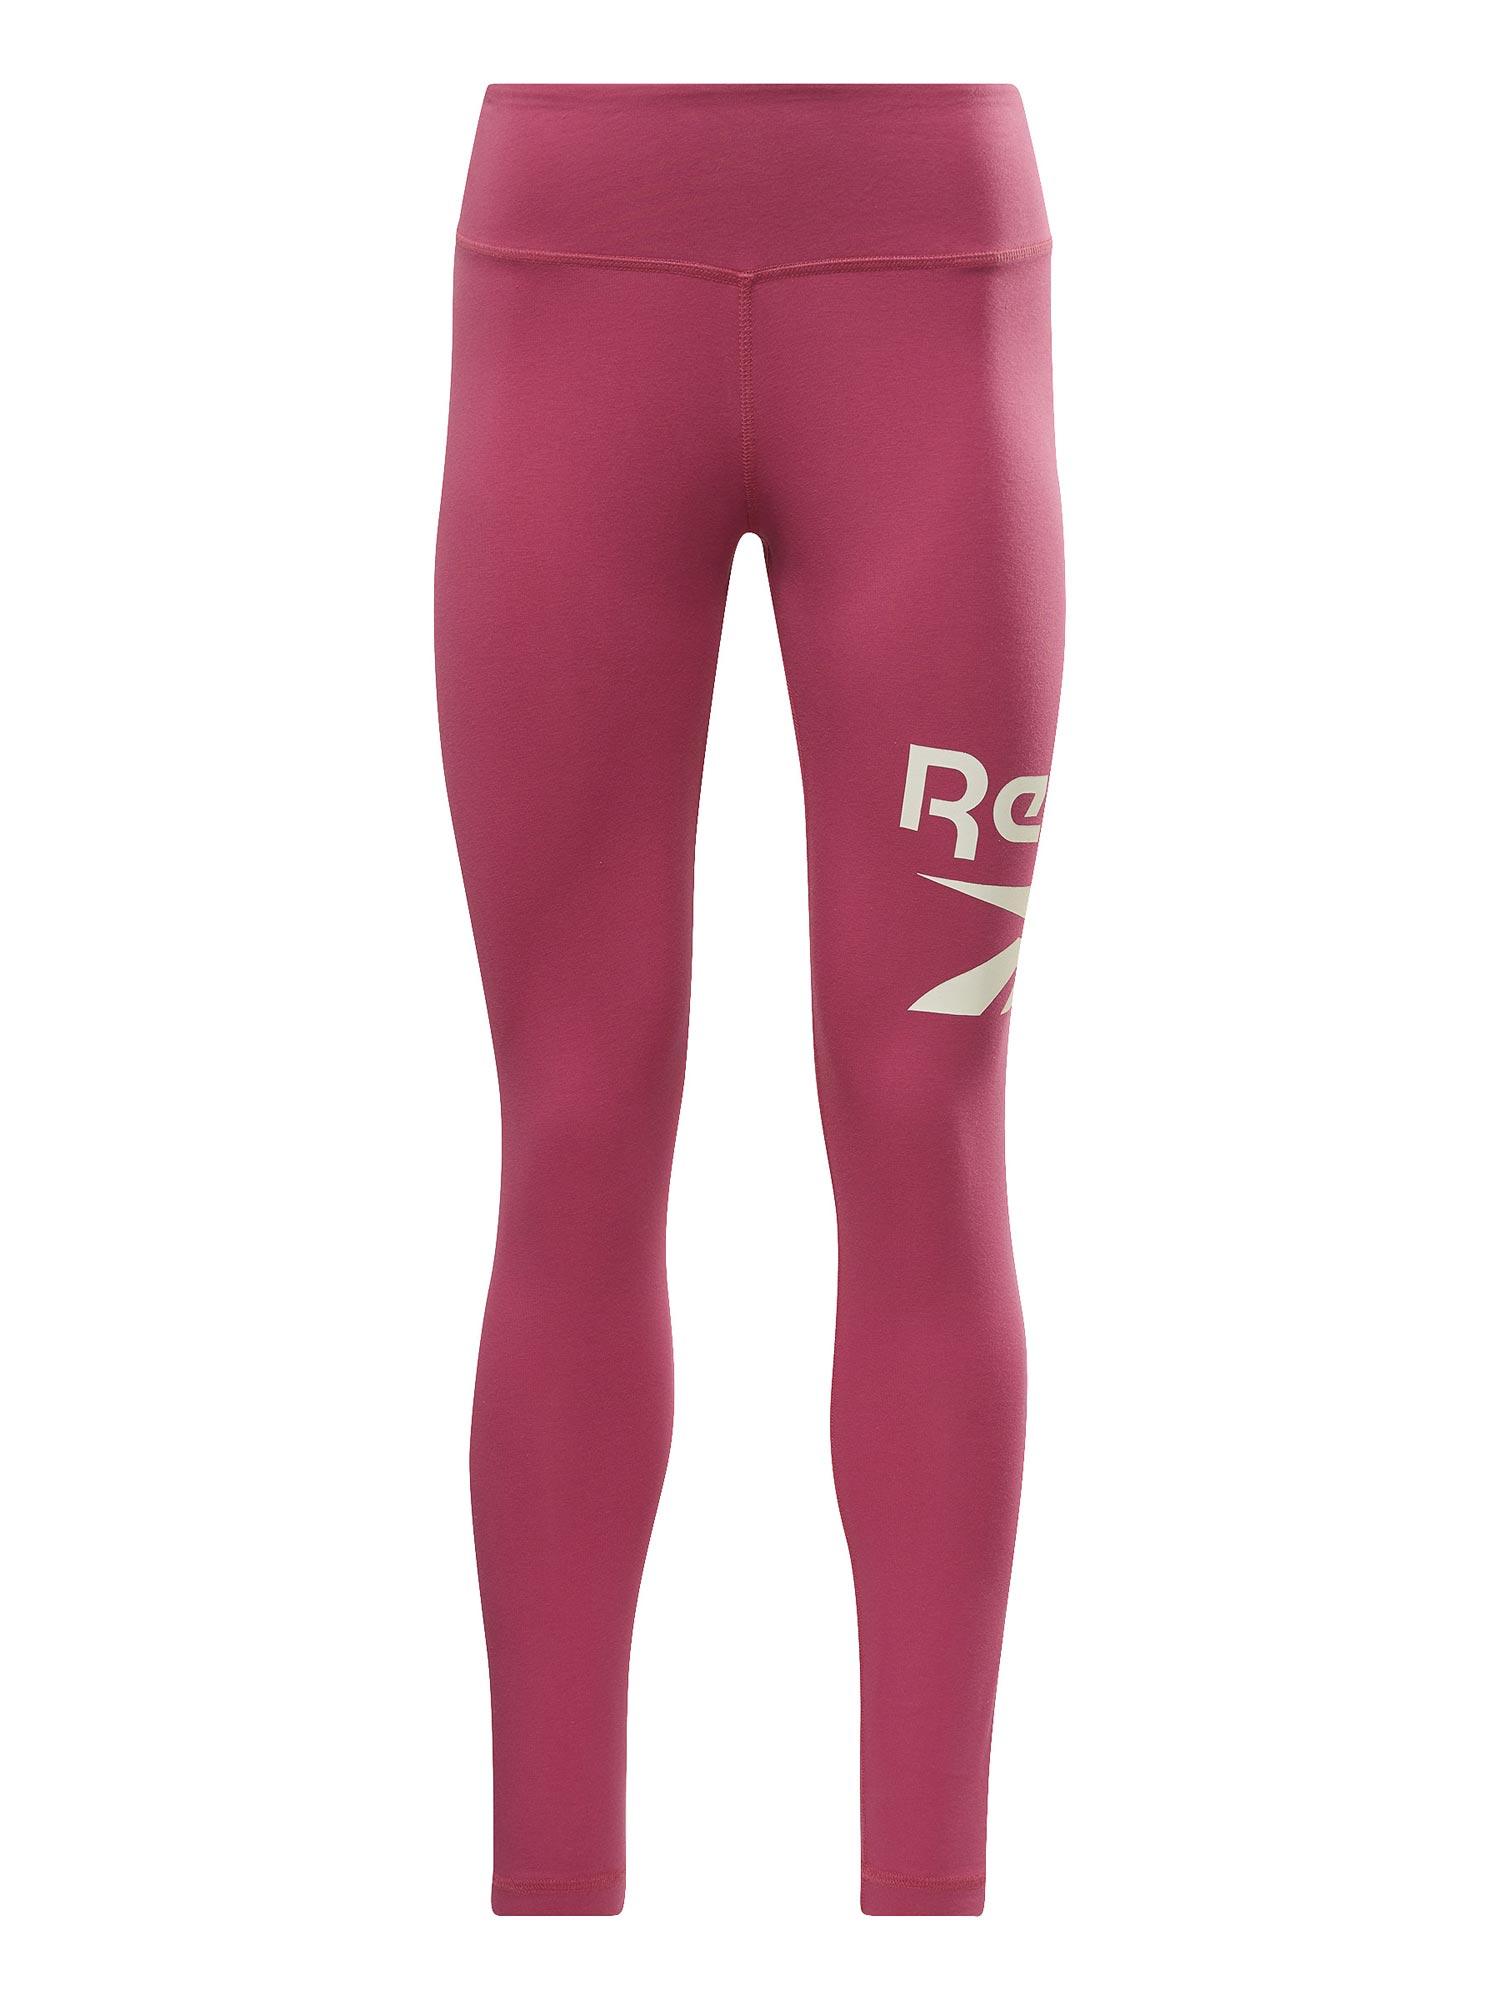 Selected image for REEBOK Ženske helanke za trčanje Identity Logo roze